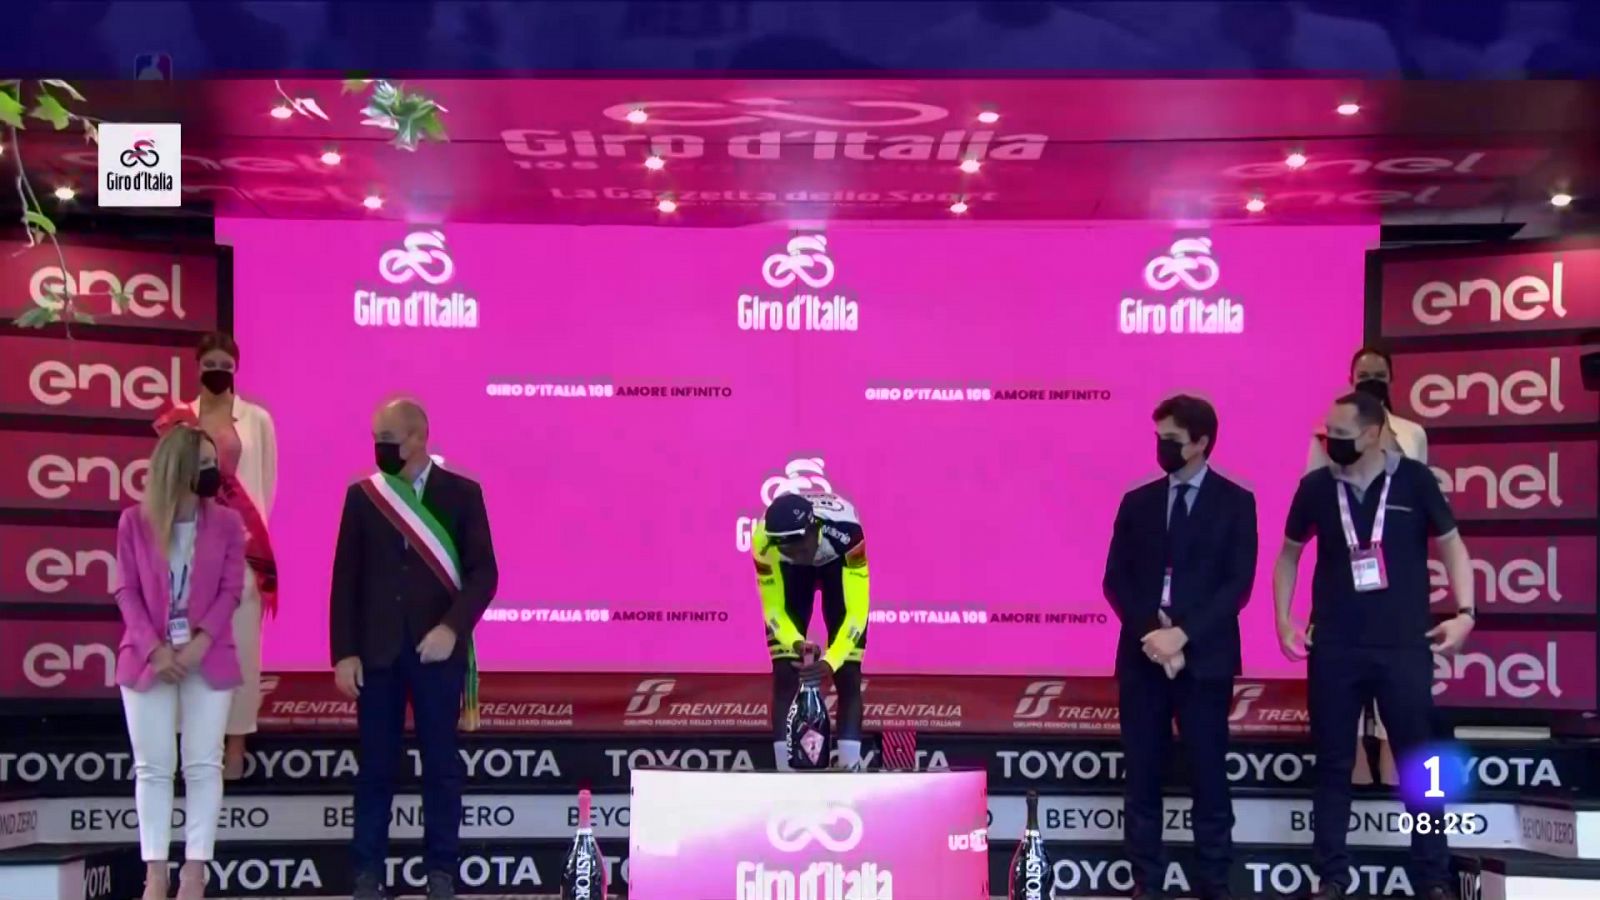 El corcho del champán pone en riesgo la continuidad de Girmay en el Giro